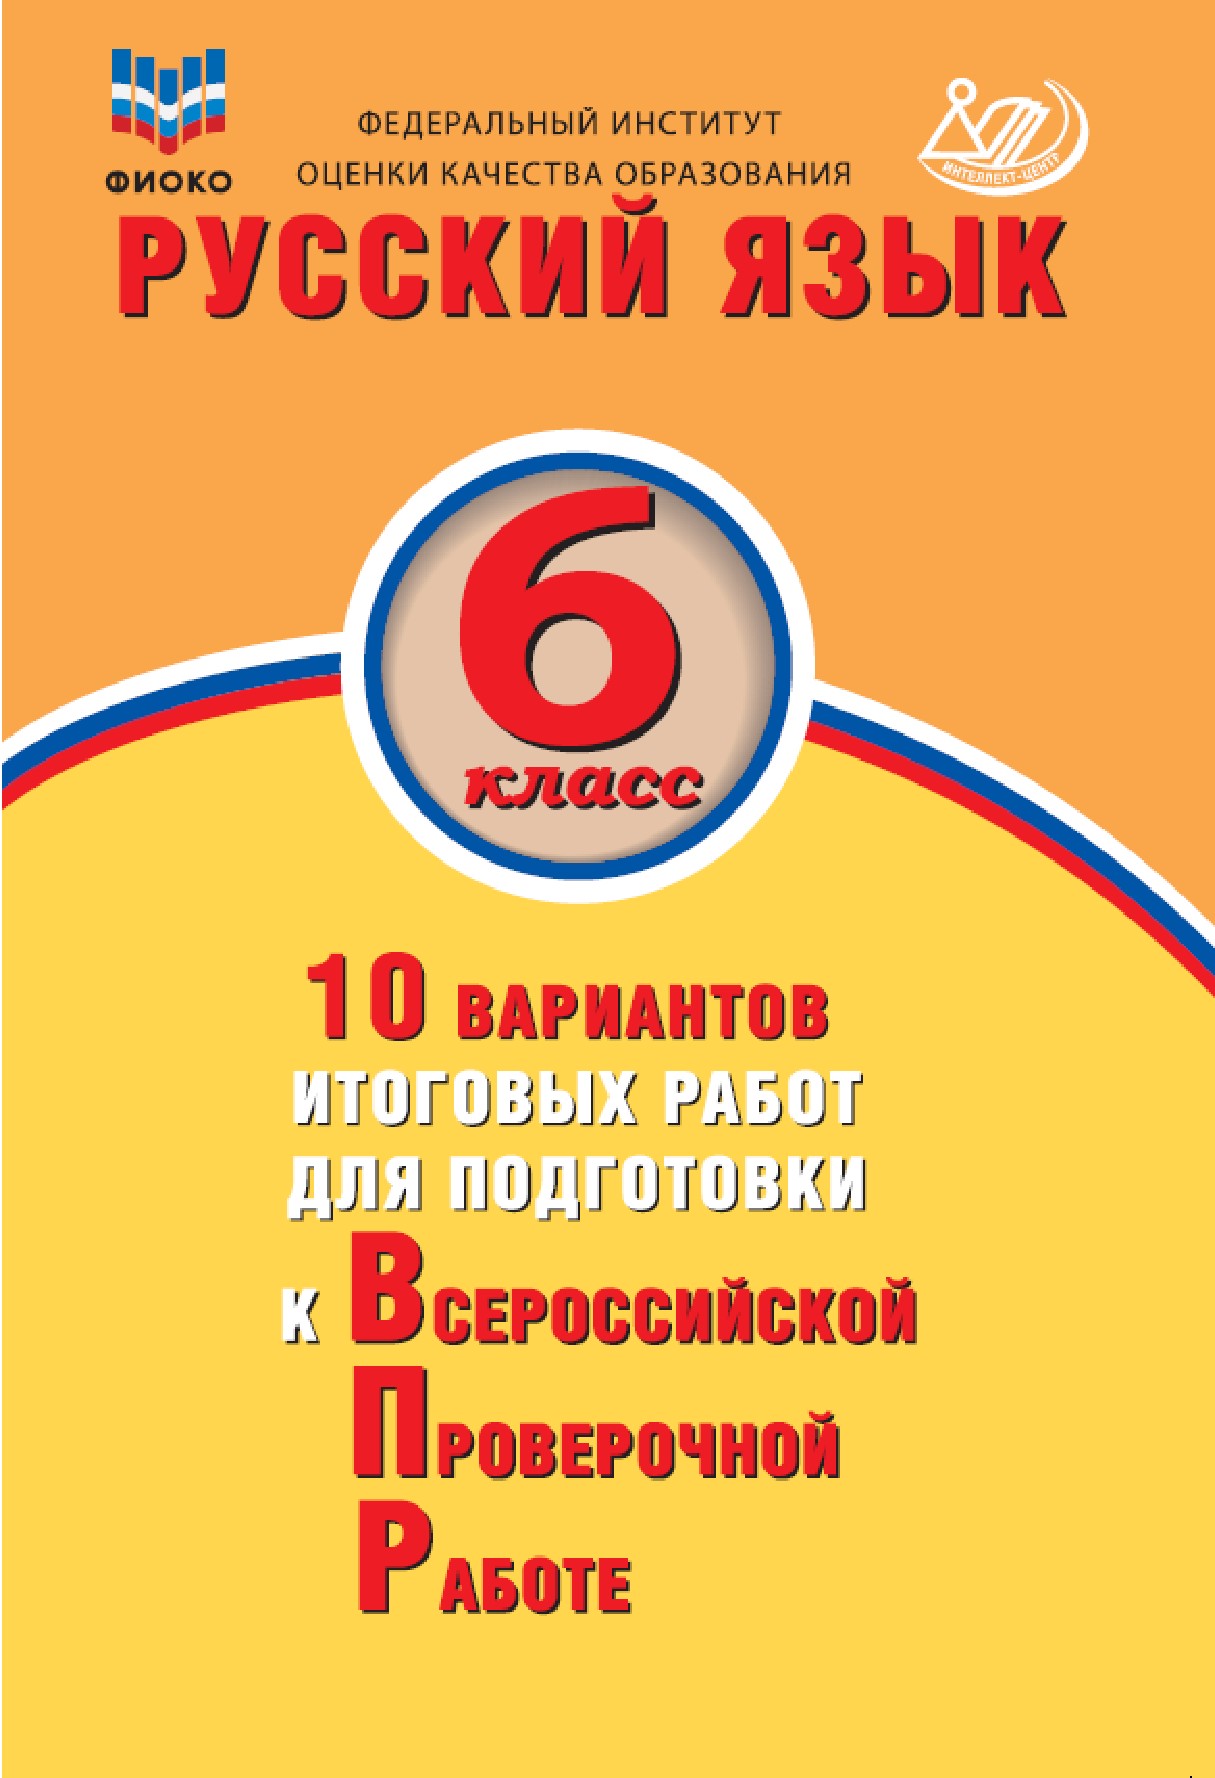 ВПР. Русский язык. 6 класс: 10 вариантов итоговых работ для подготовки к ВПР